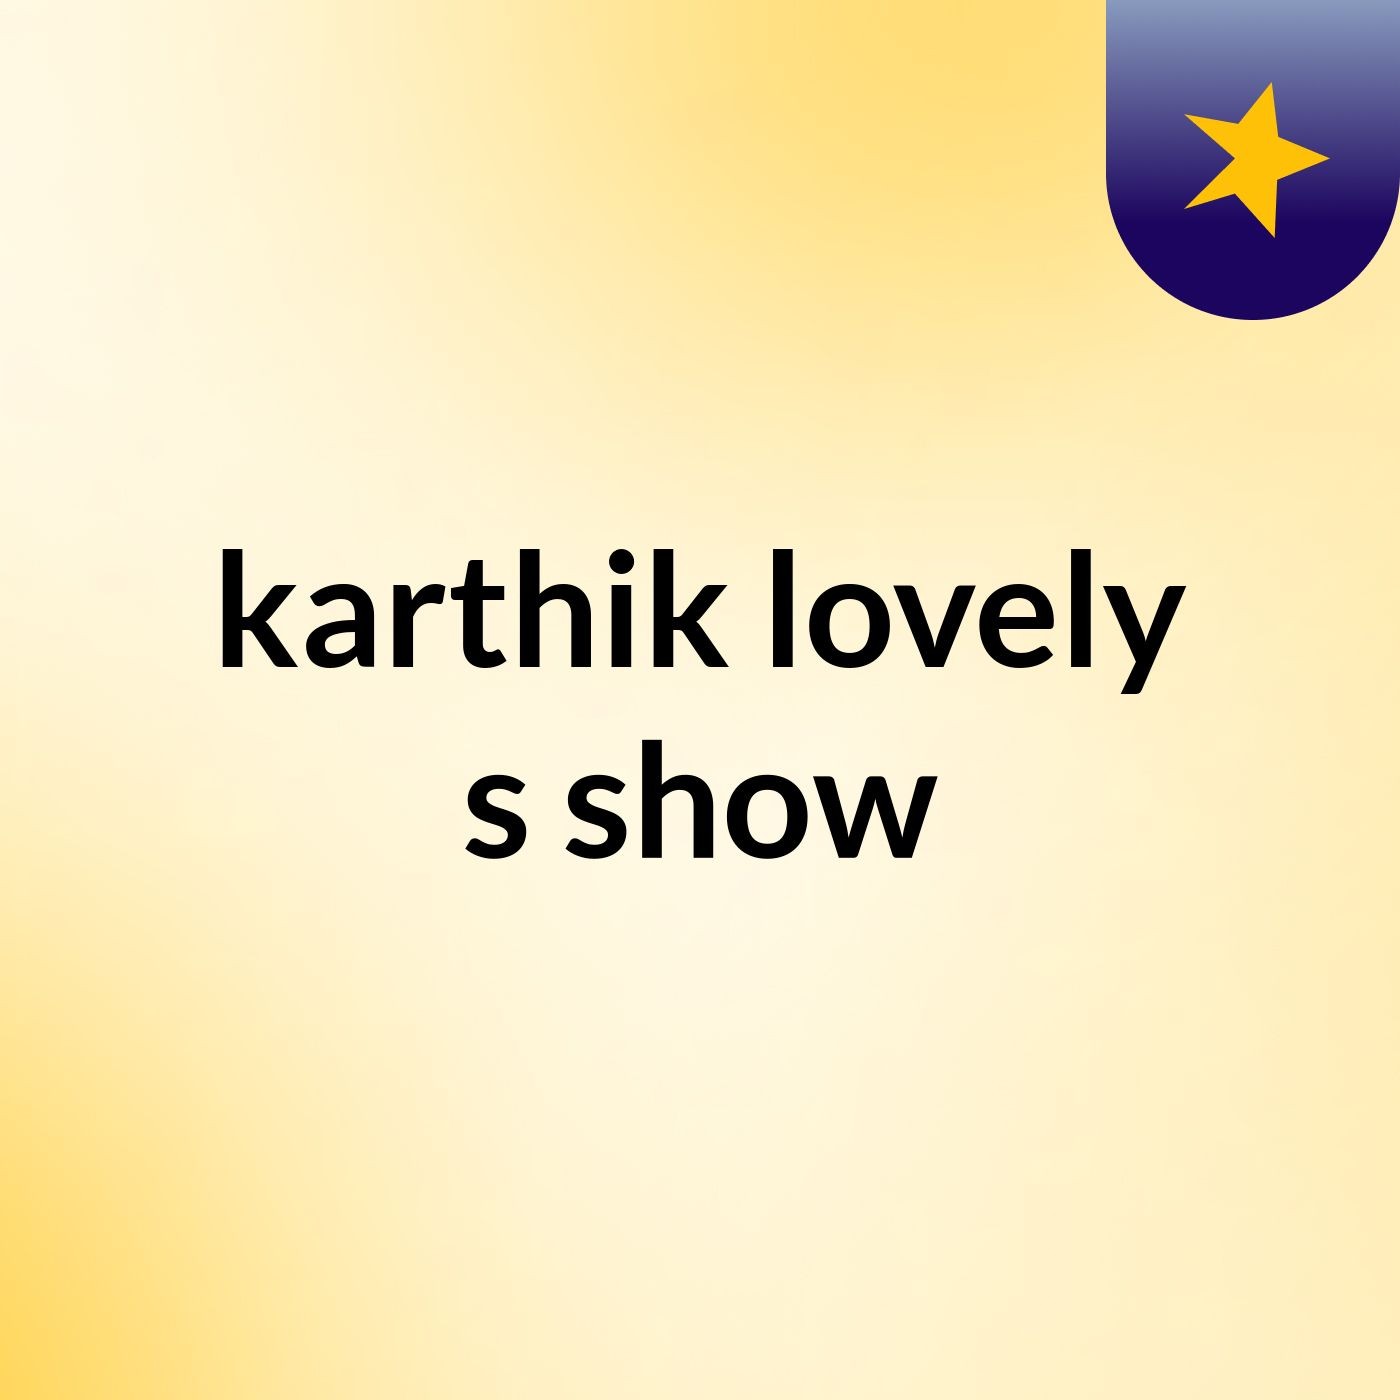 karthik lovely's show